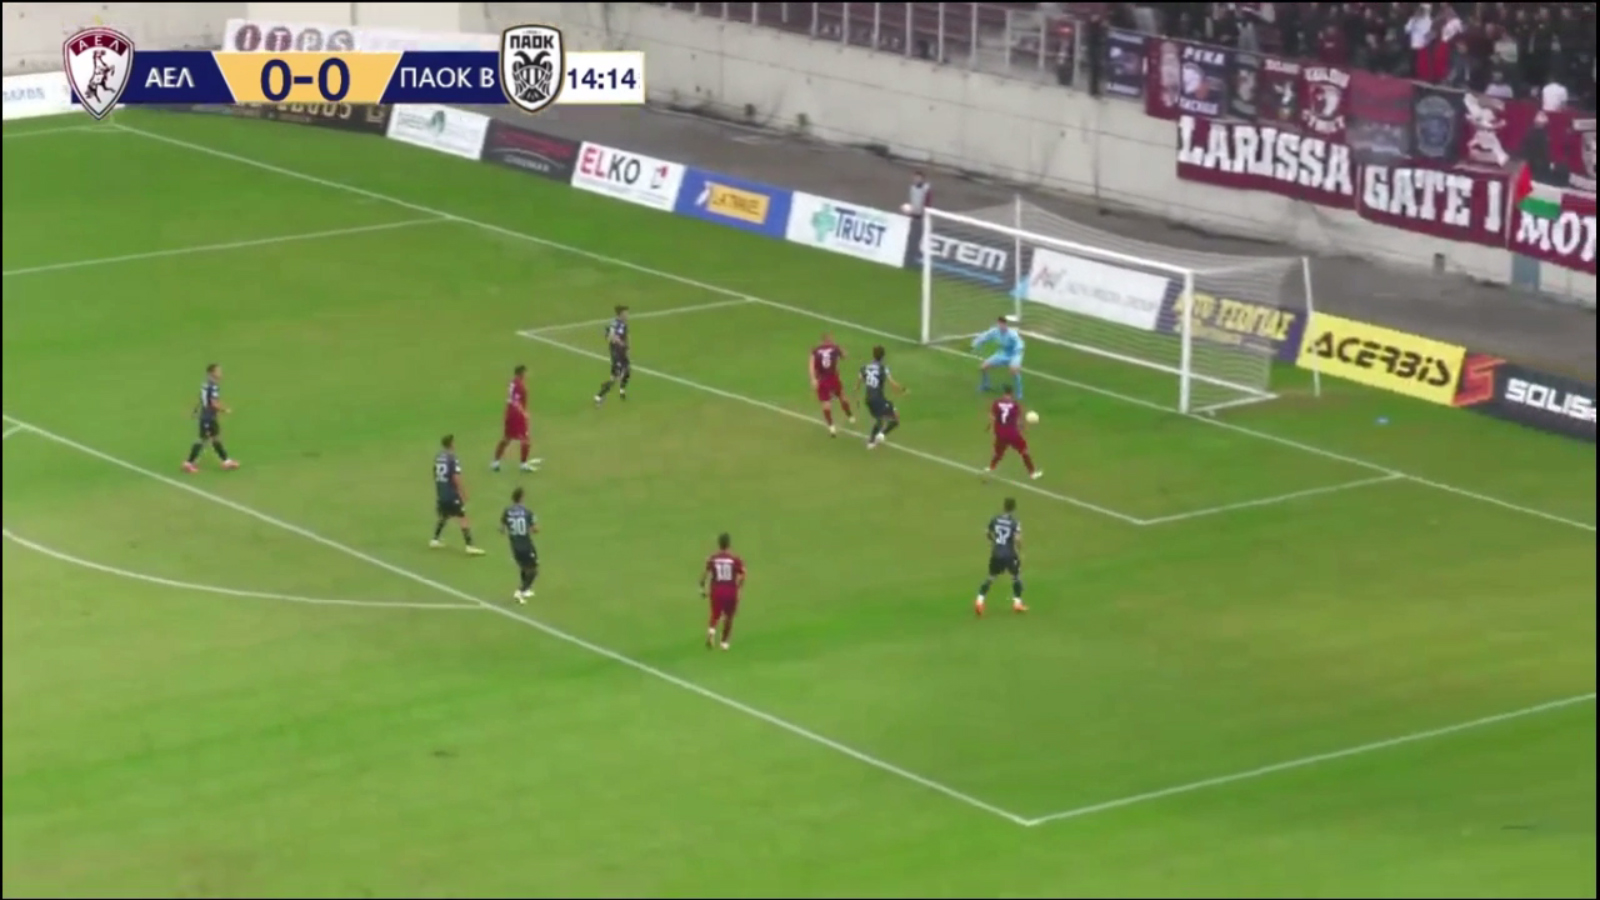 ΑΕΛ-ΠΑΟΚ Β 2-0: Τα γκολ του αγώνα (video)